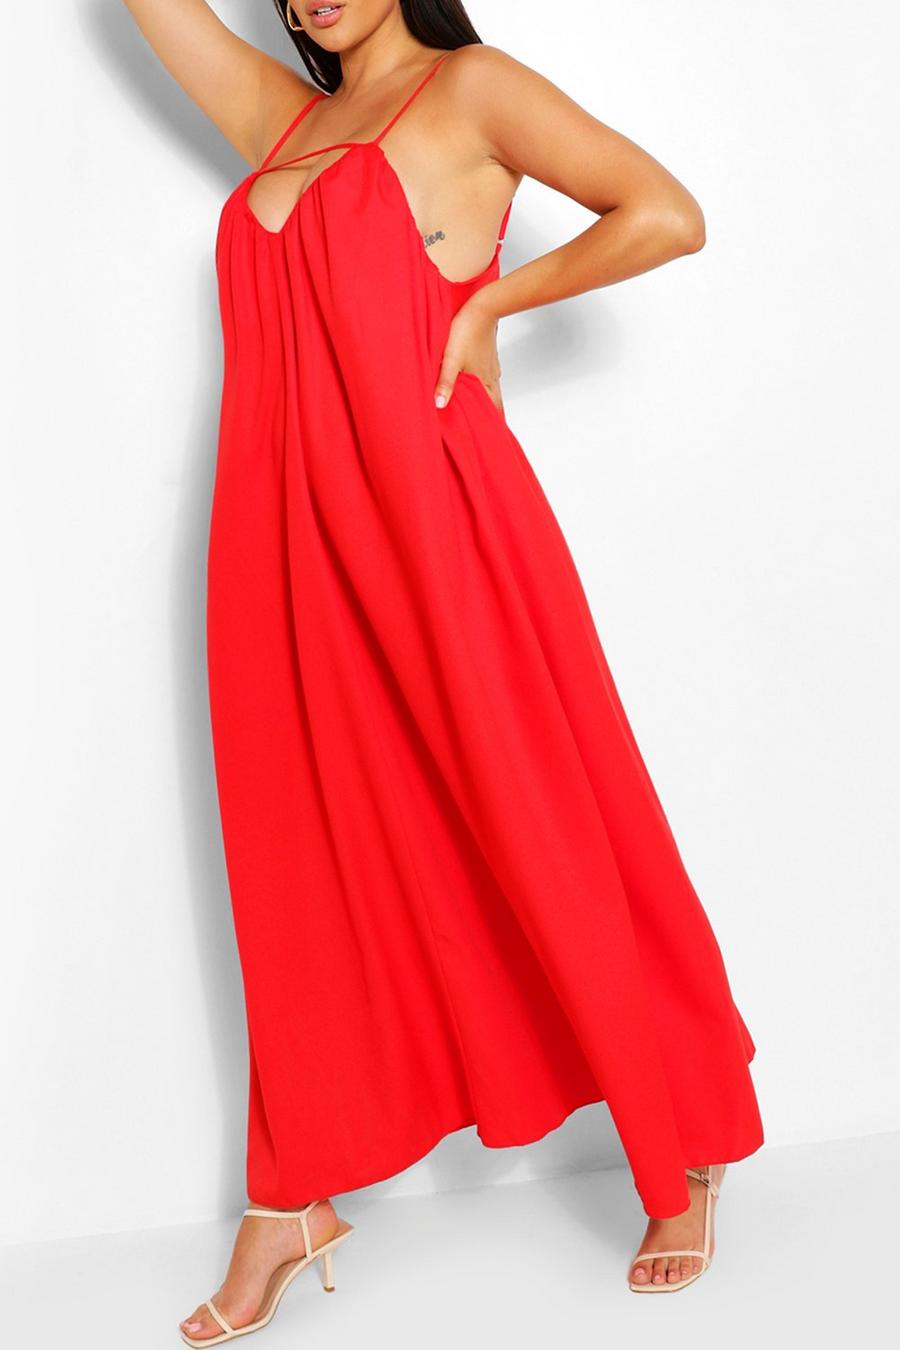 אדום rojo שמלת מקסי עם חתכים וכתפיות דקות למידות גדולות